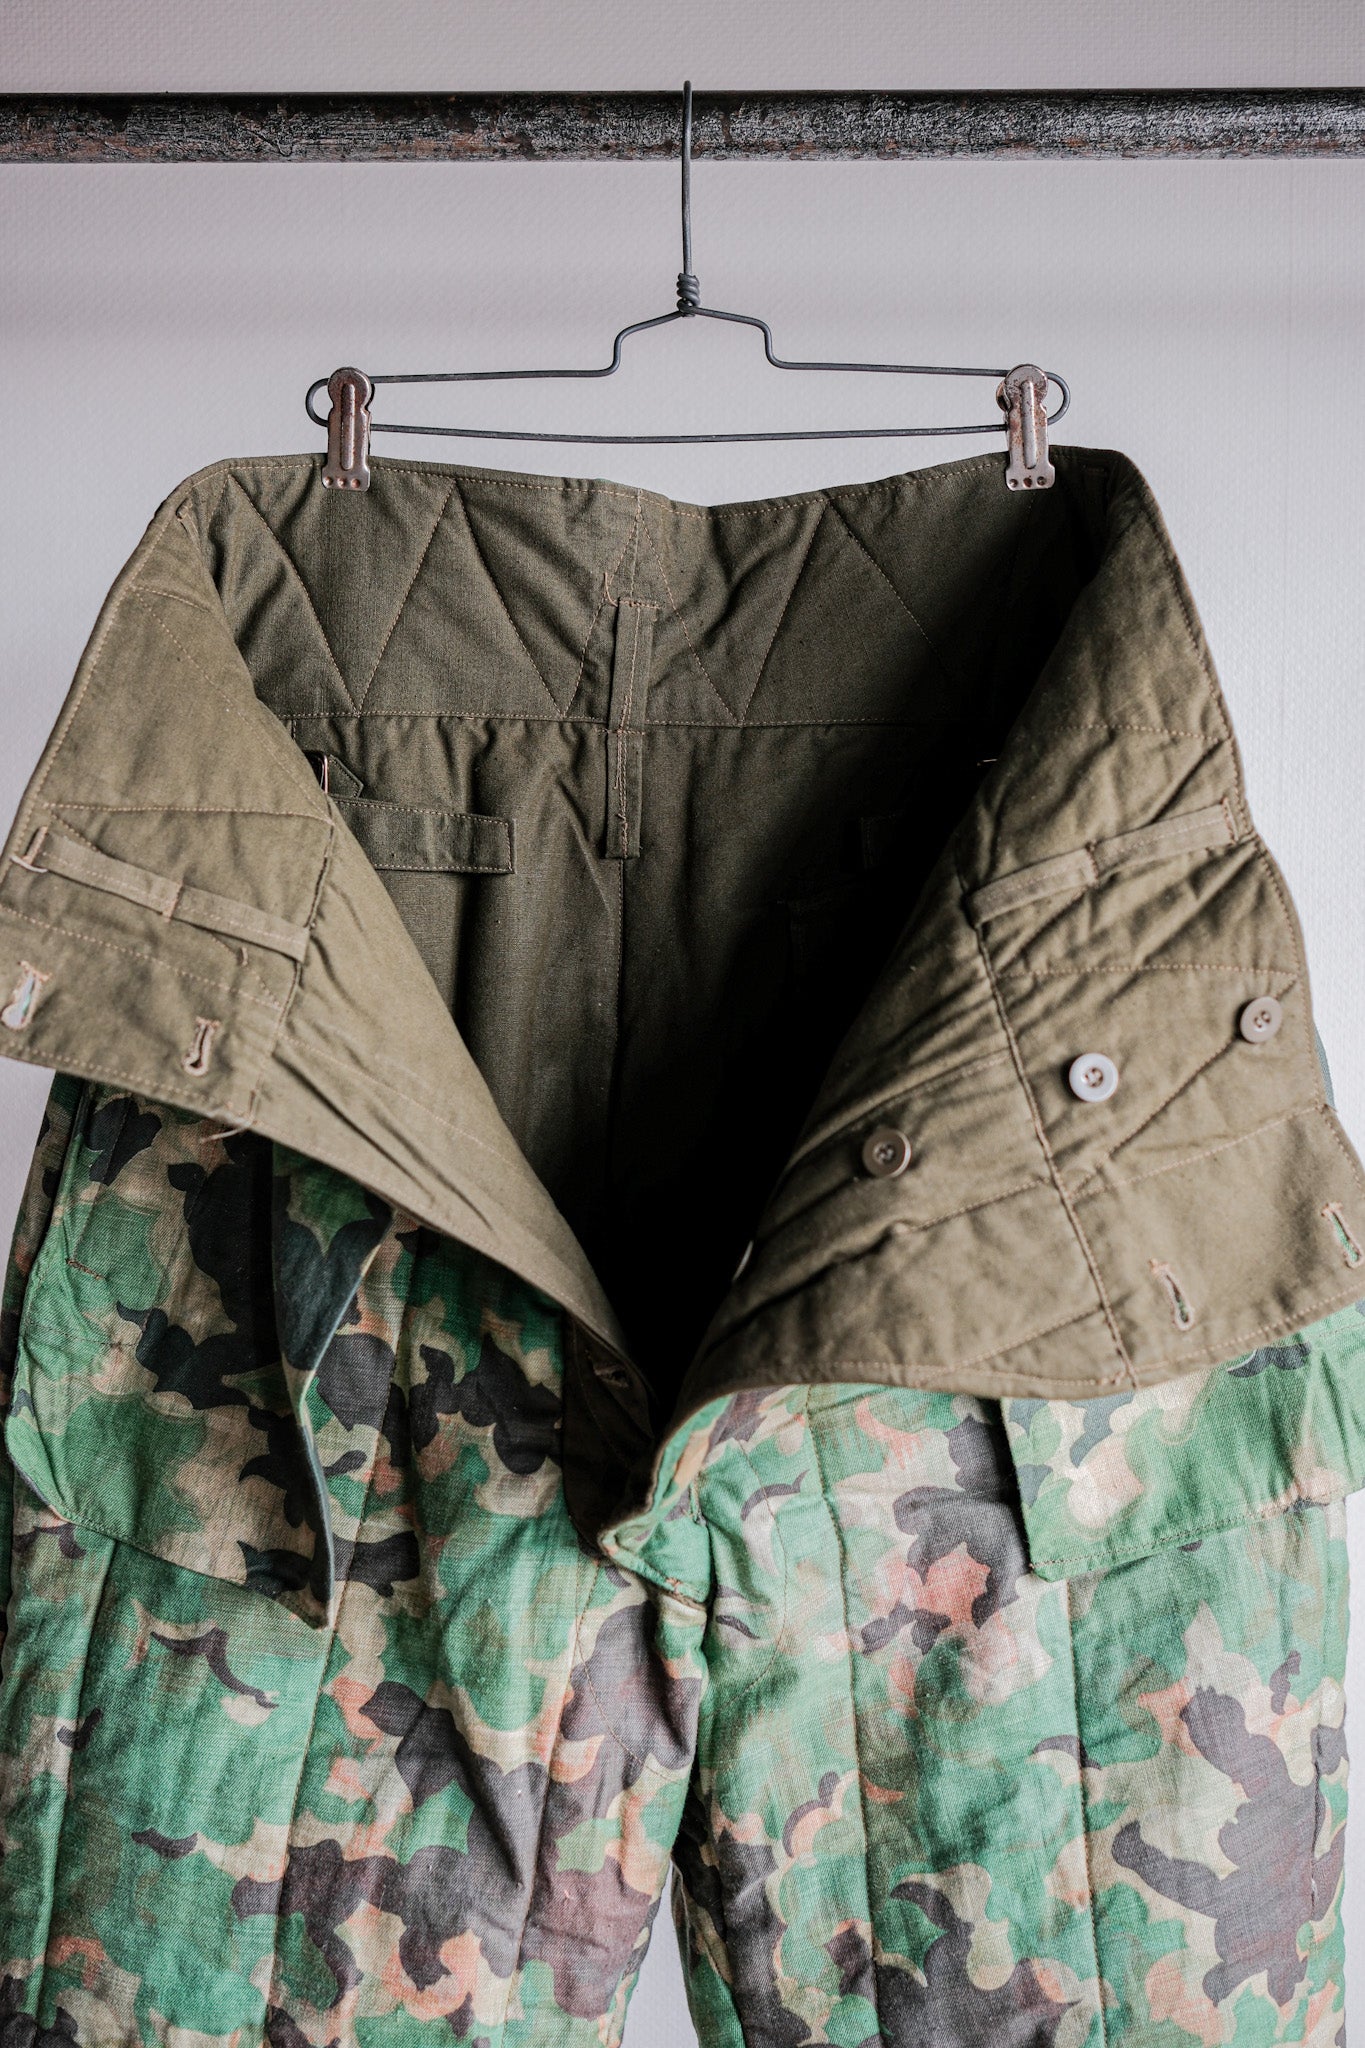 [〜50年代]捷克斯洛伐克空軍Dubaky偽裝可逆褲子大小。2B“死庫存”